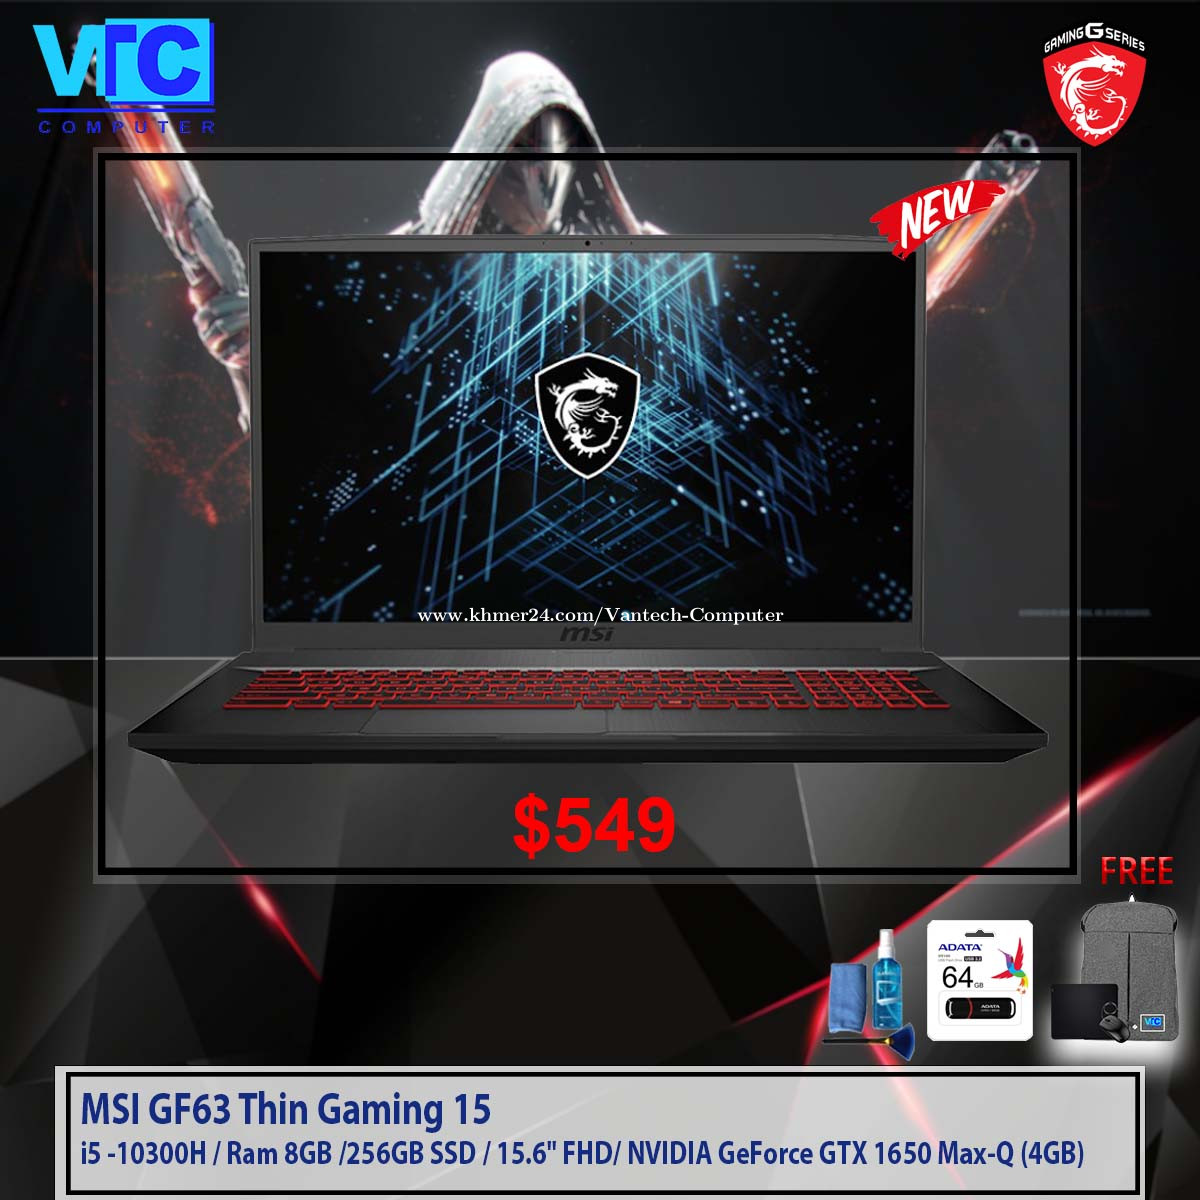 MSI GF63 Thin Gaming 15 Price $595.00 in Mittakpheap, Cambodia - Vantech  vantech